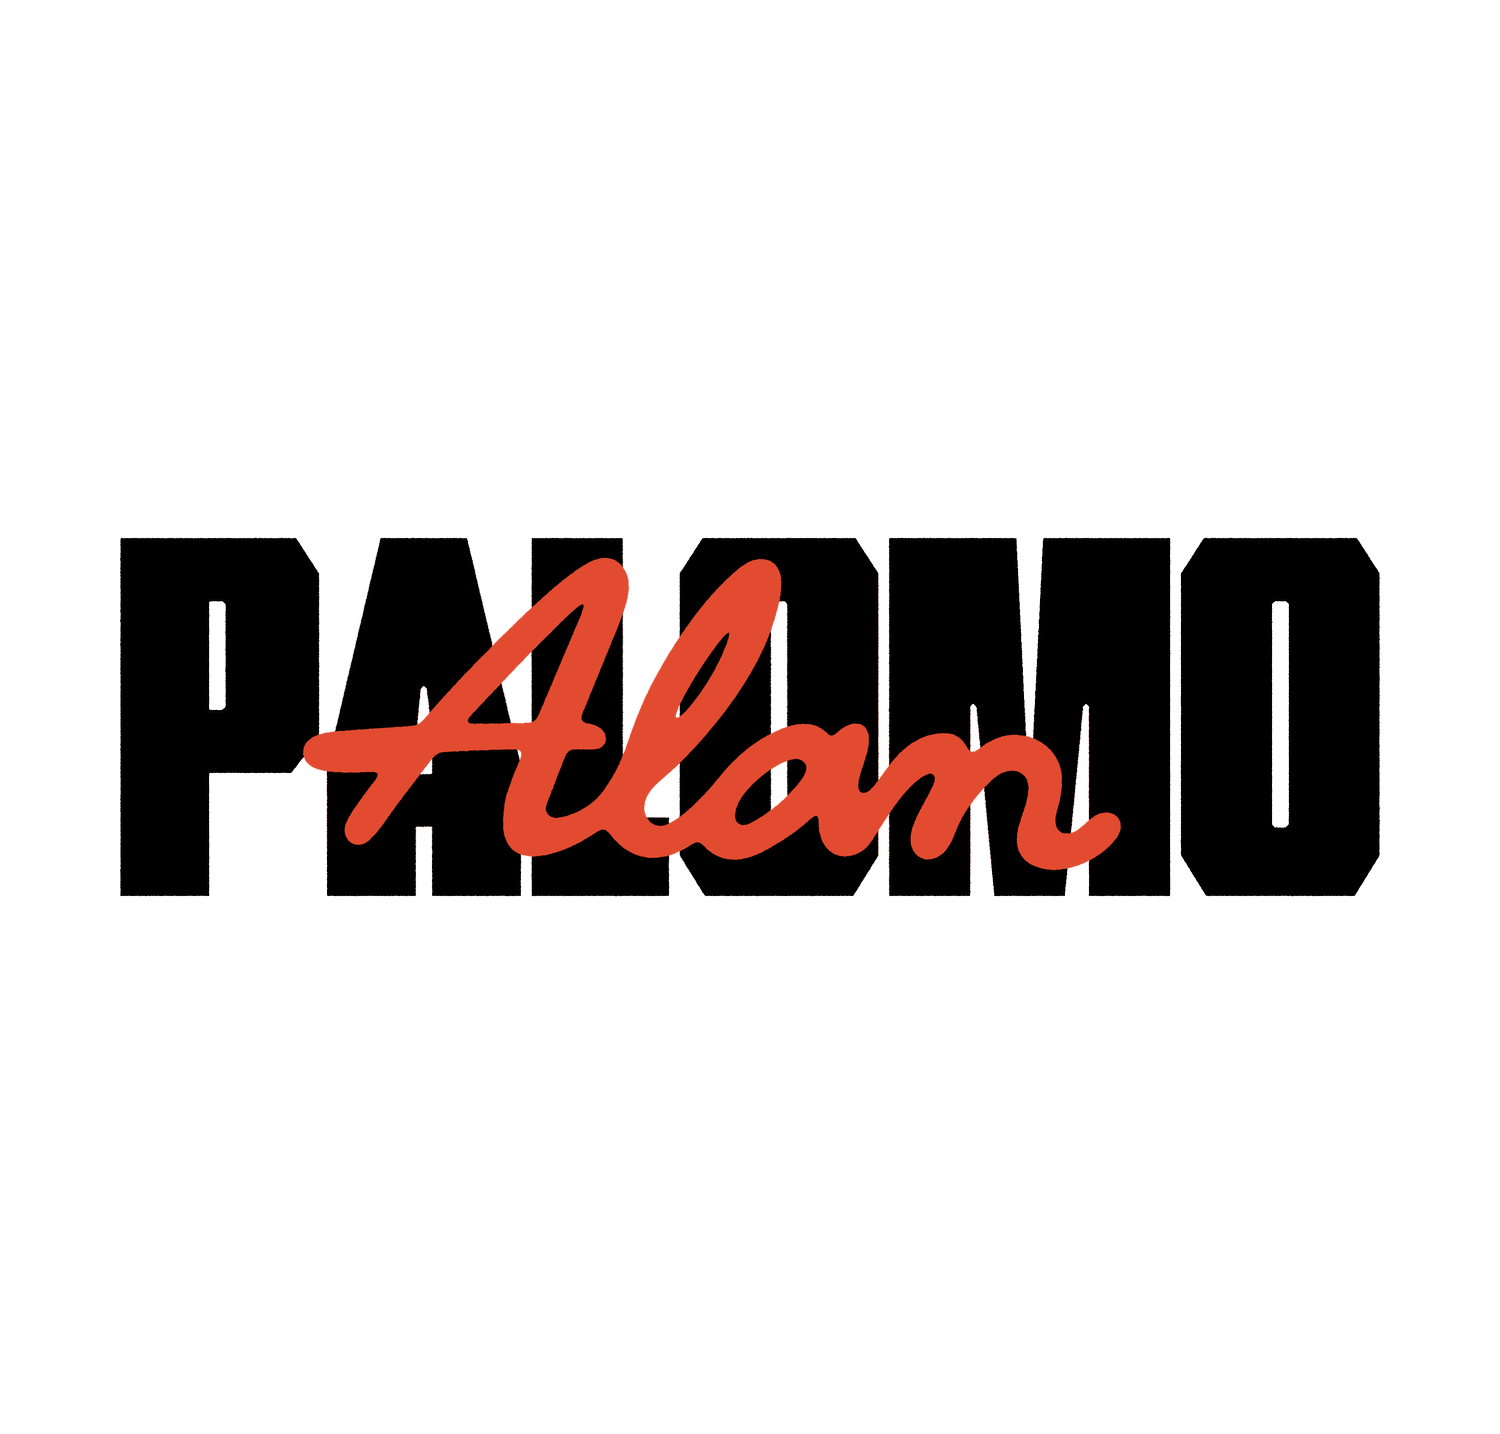 Alan Palomo